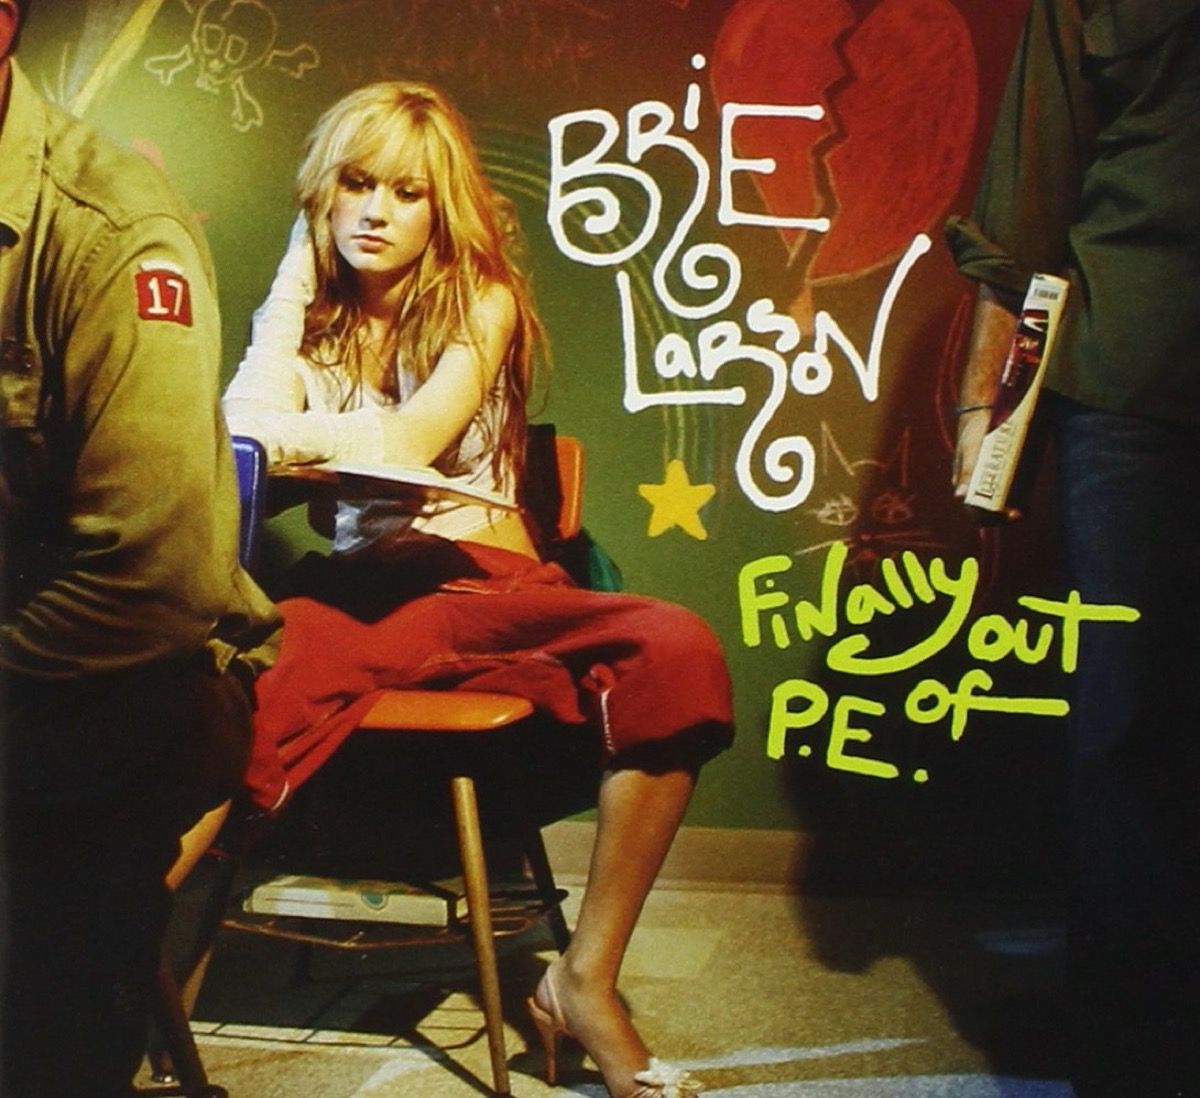 Brie Larson finalmente fuera de la portada del álbum PE